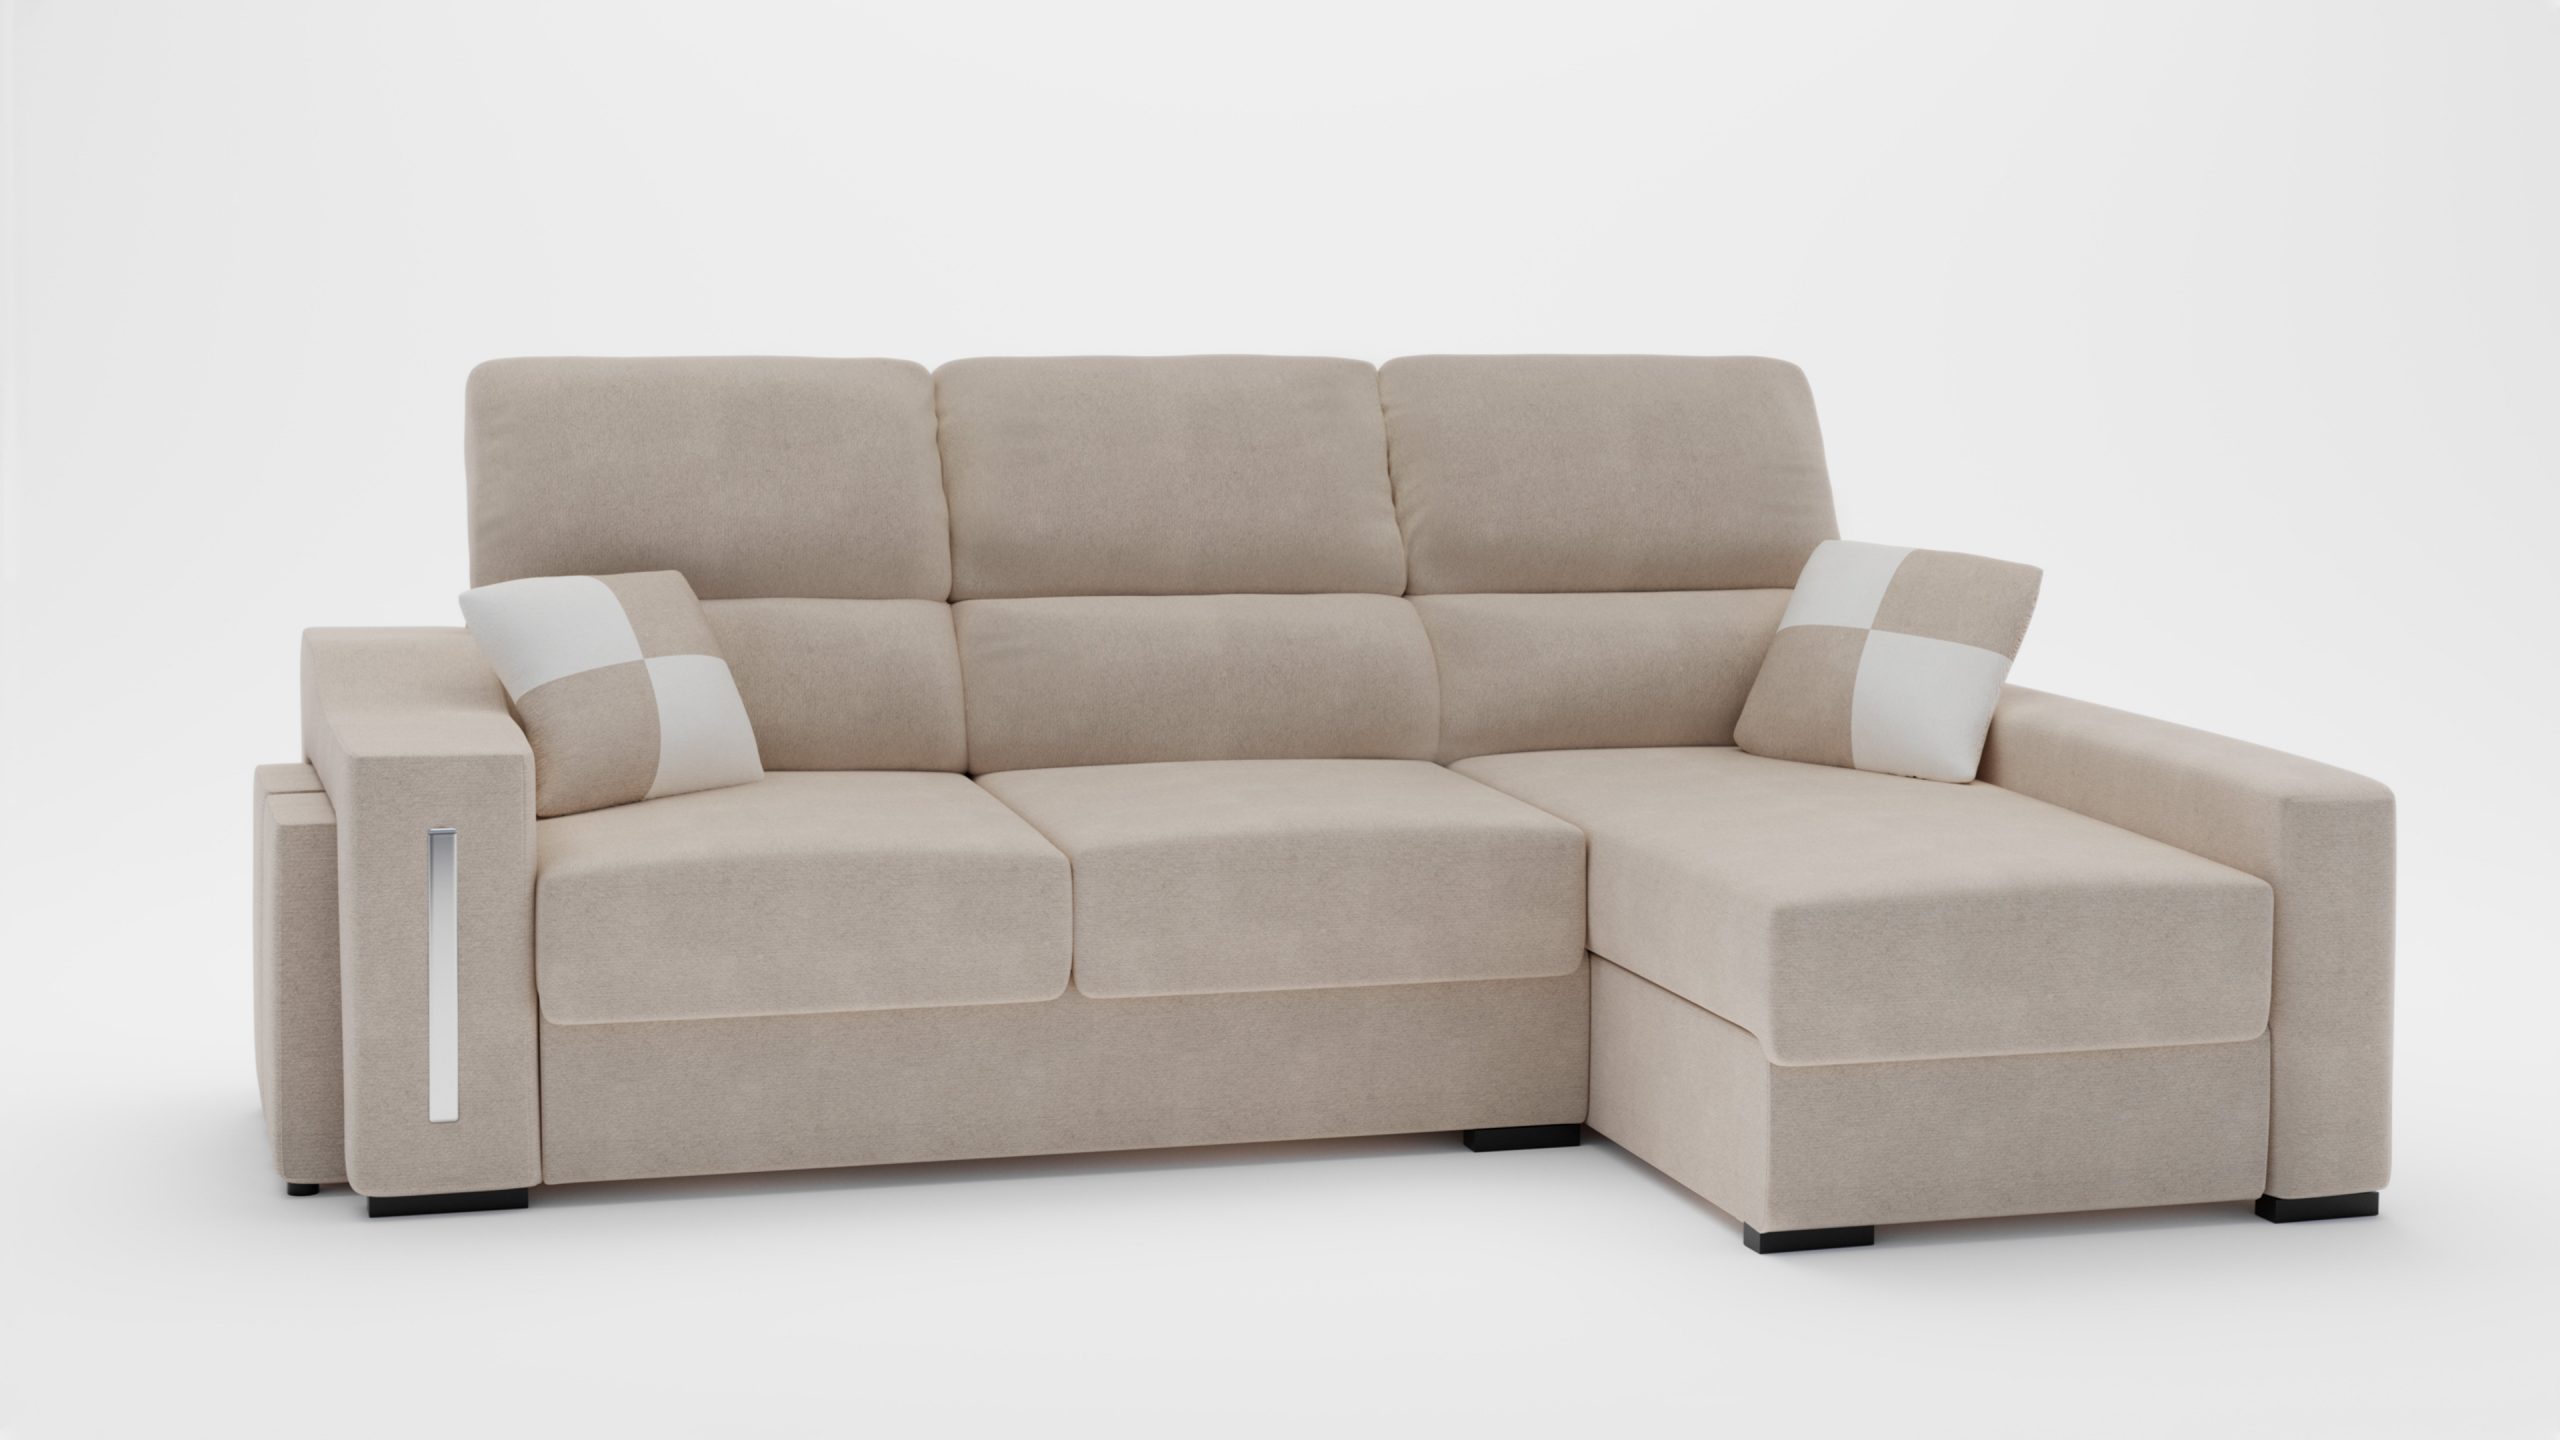 Render de producto Muebles boom Sofa 45 grados